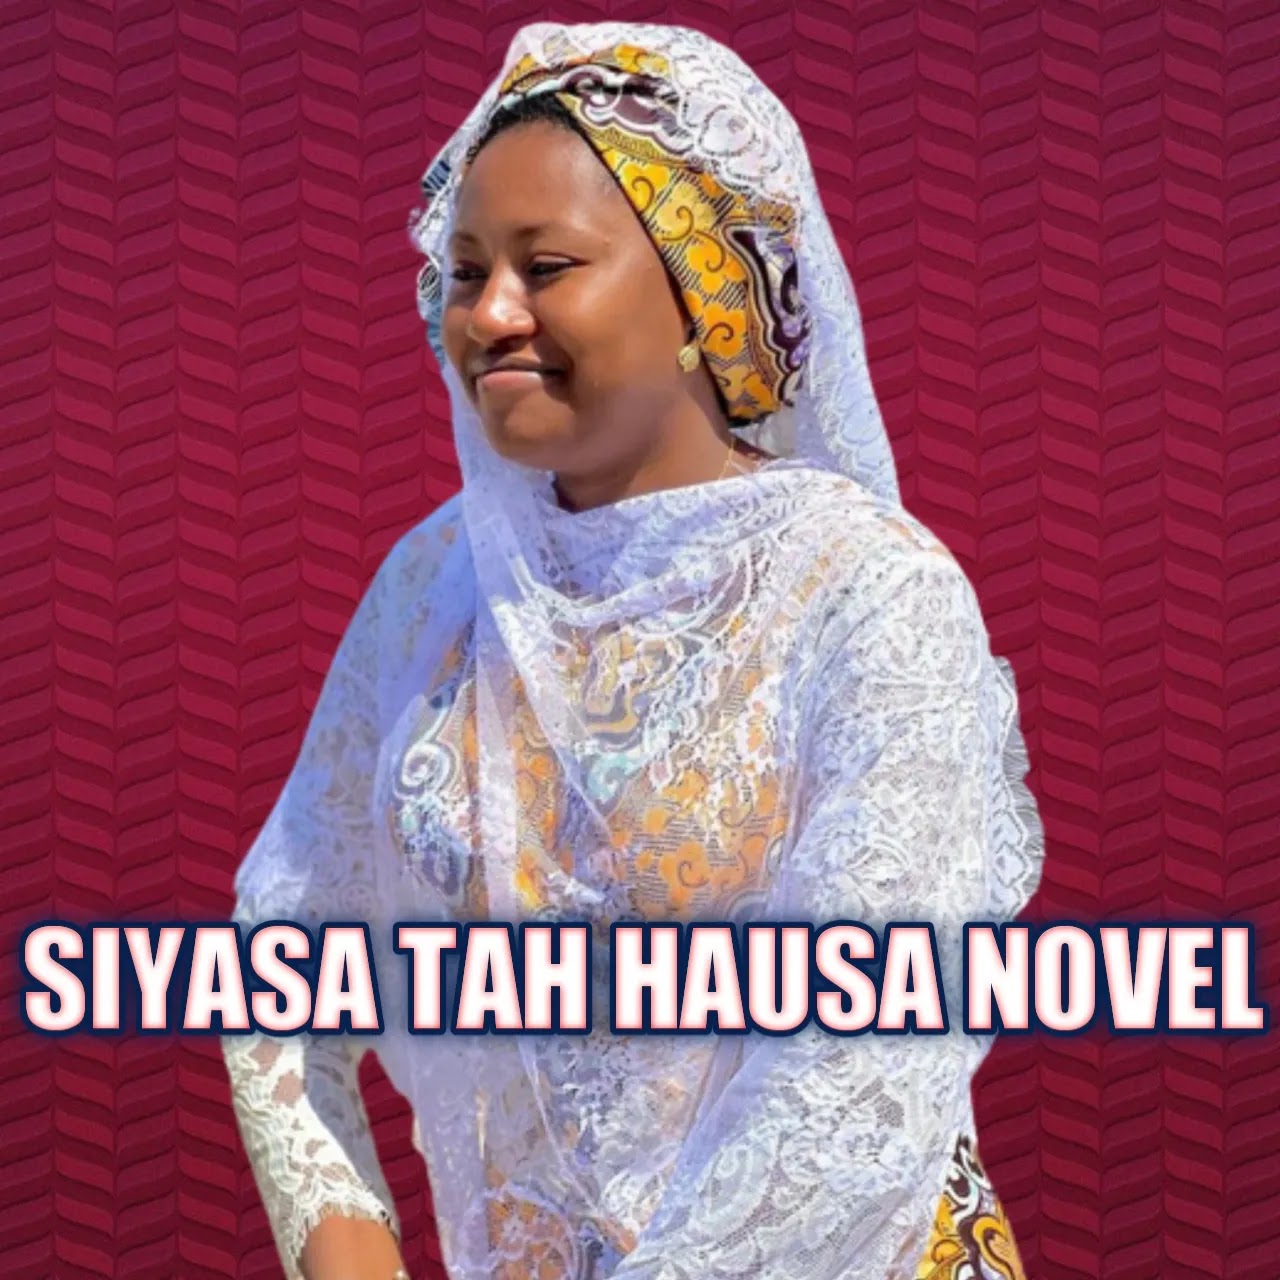 Siyasa tah hausa novel Complete